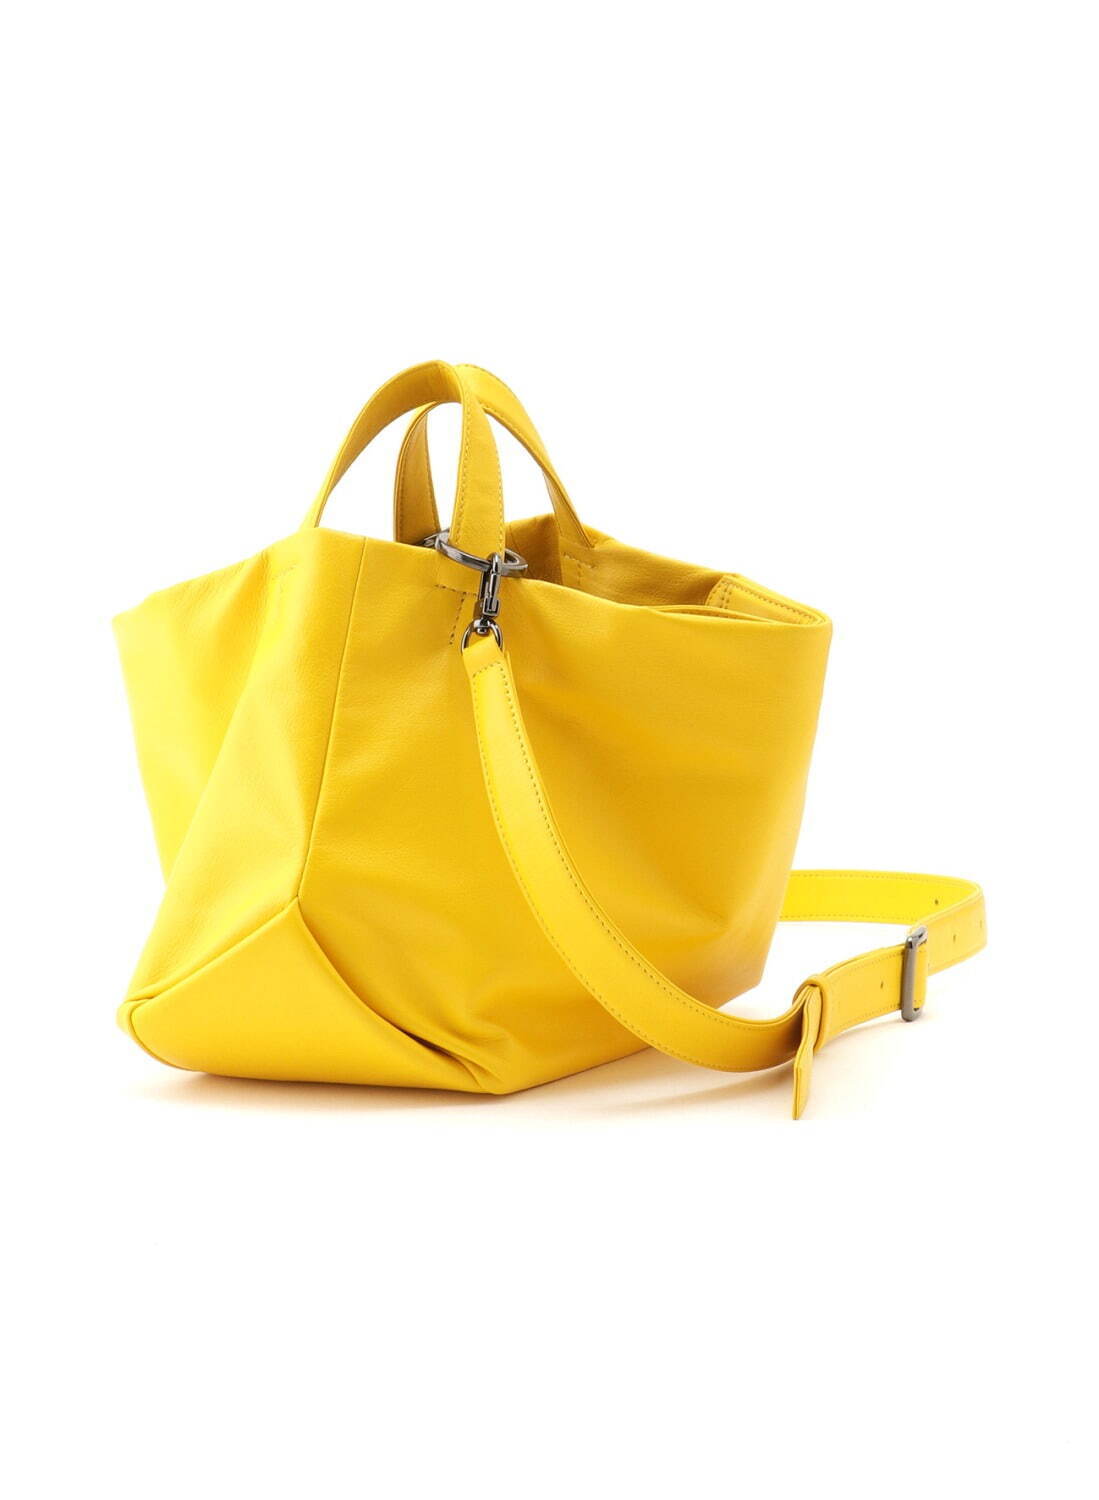 ディスコード ヨウジヤマモト“花のつぼみ”型3WAYレザーバッグに新色